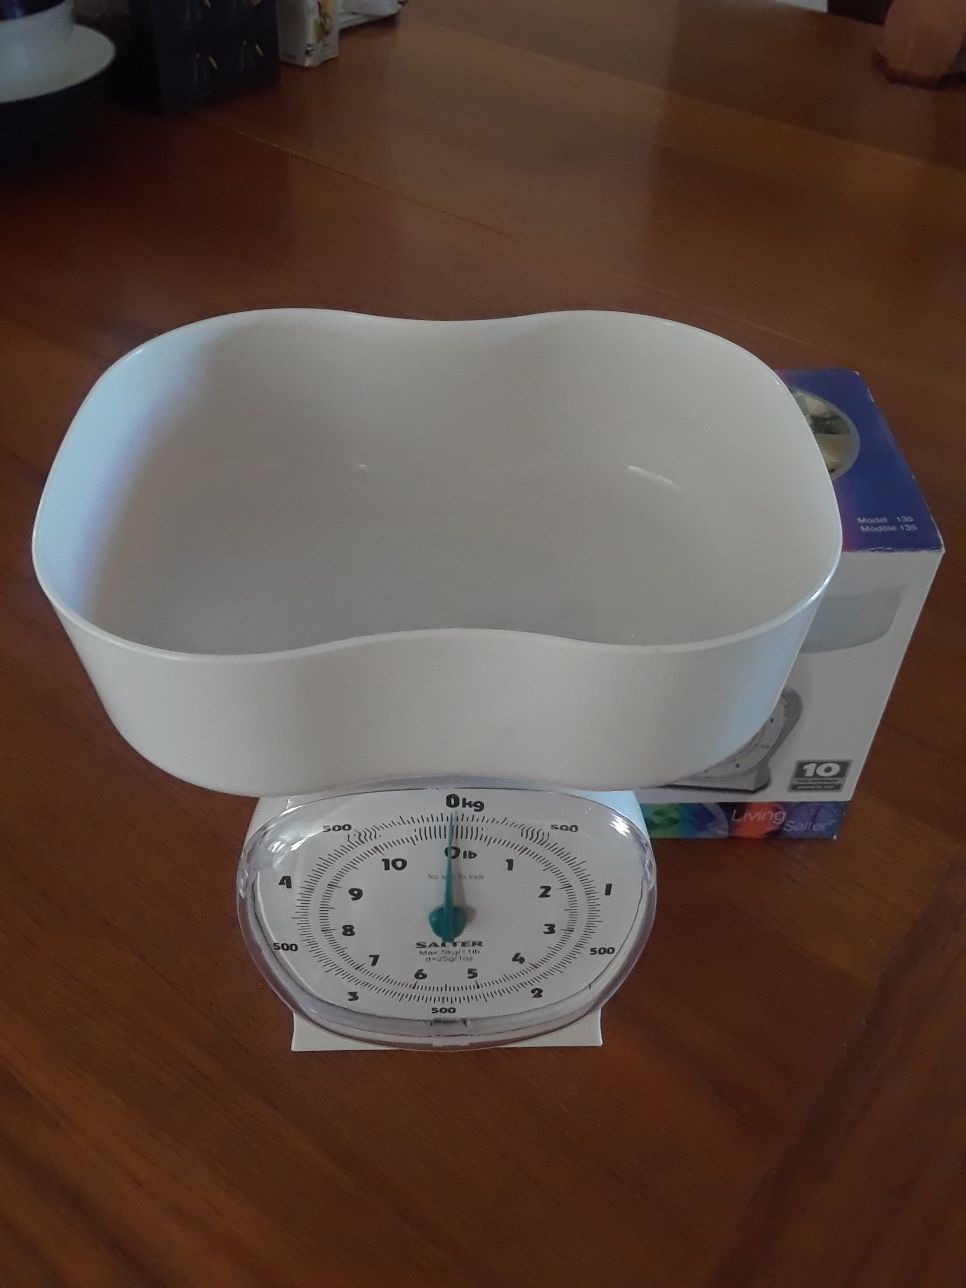 Plastic kitchen scale